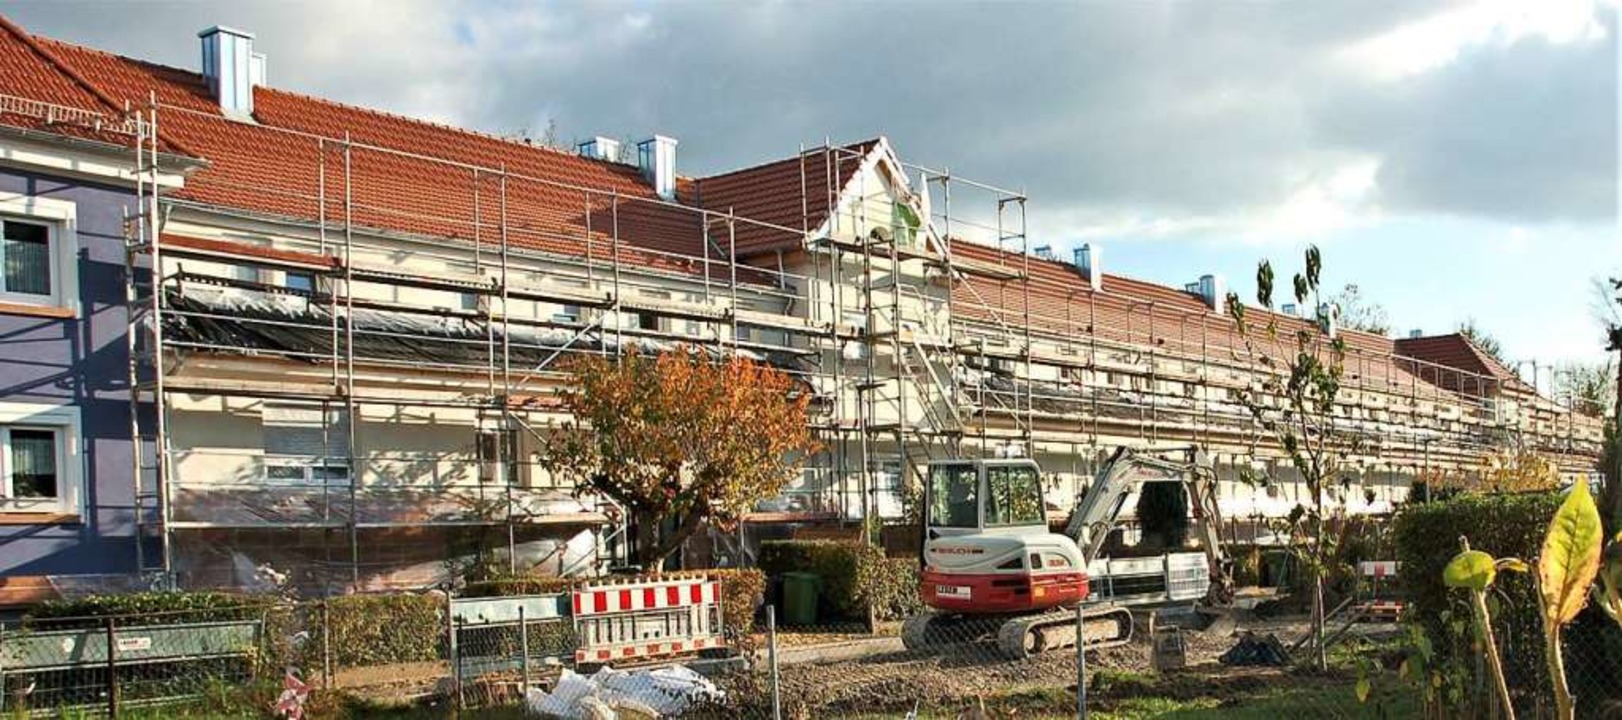 Im Areal Friedensheim in Lahr laufen derzeit umfangreiche Renovierungen.  | Foto: Wolfgang Beck